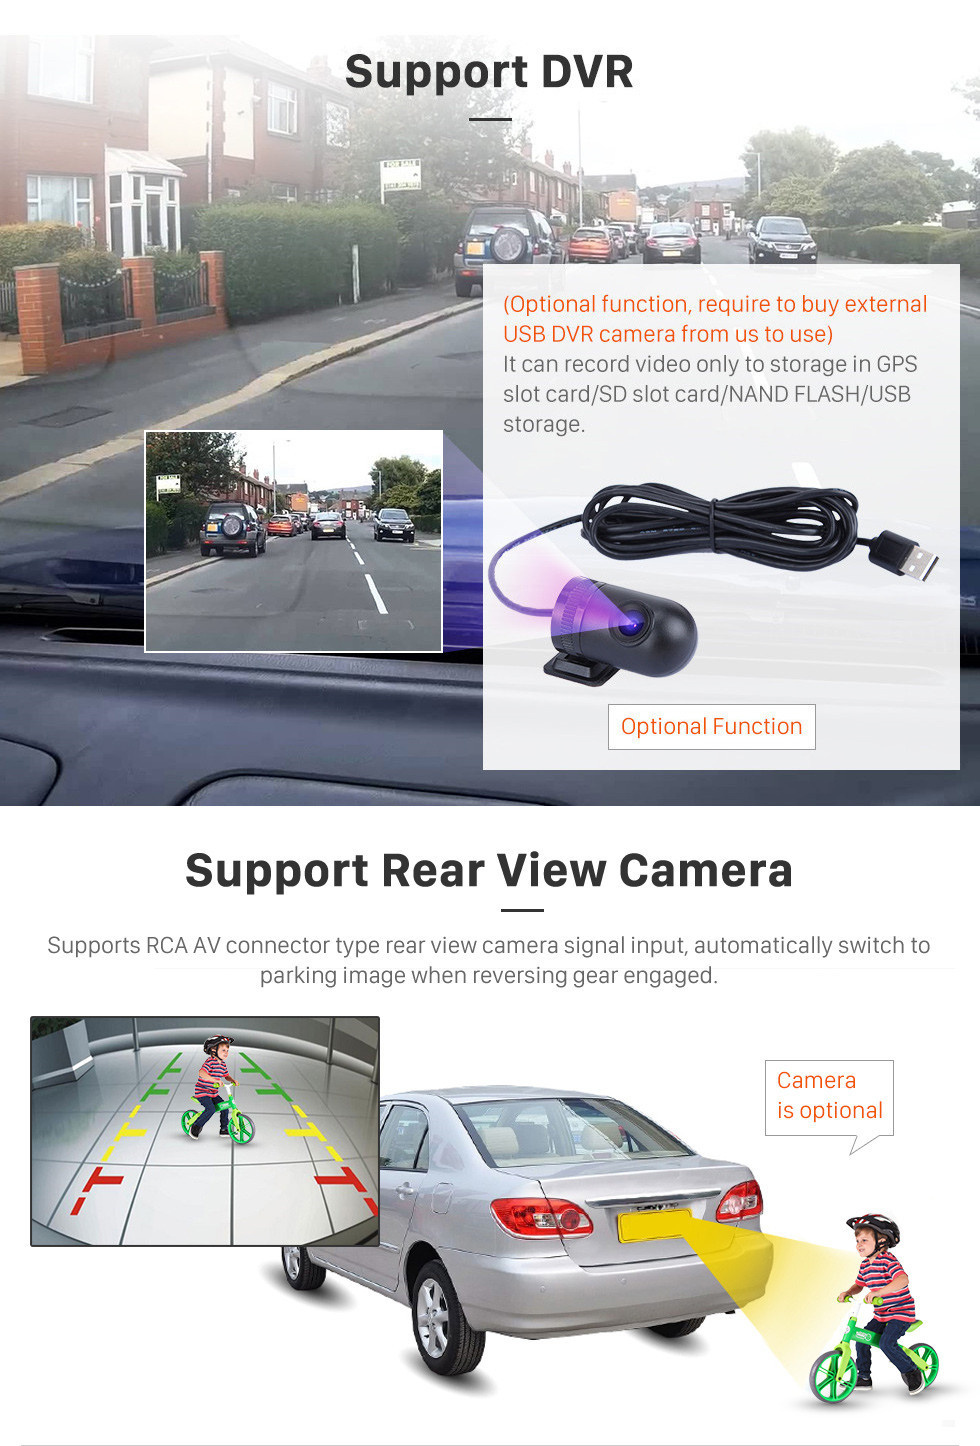 Seicane 2012-2015 Honda Elysion Android 11.0 Radio de navigation GPS 9 pouces Bluetooth HD à écran tactile Soutien Carplay Caméra de recul TPMS